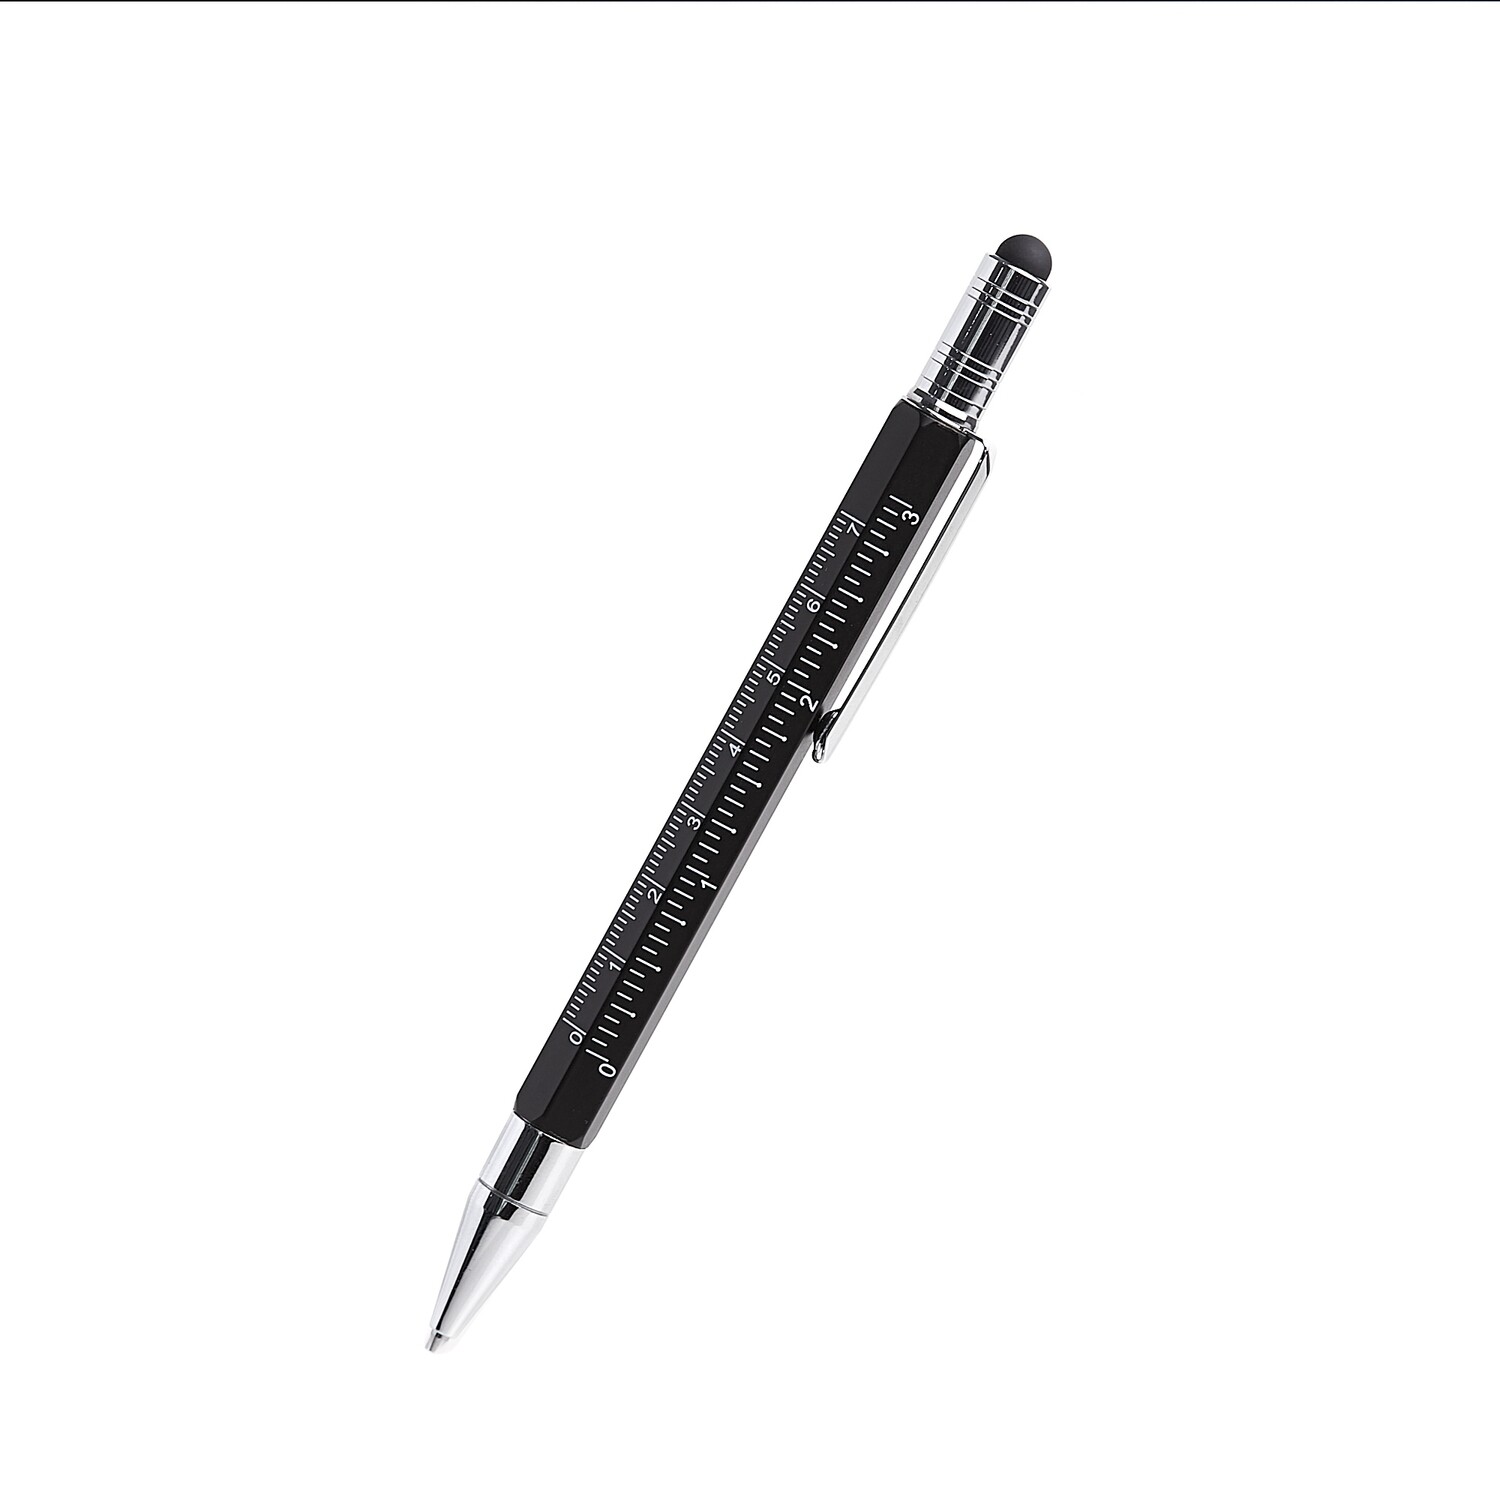 5-in-1 Multifunction Engineer's Tool Pencil